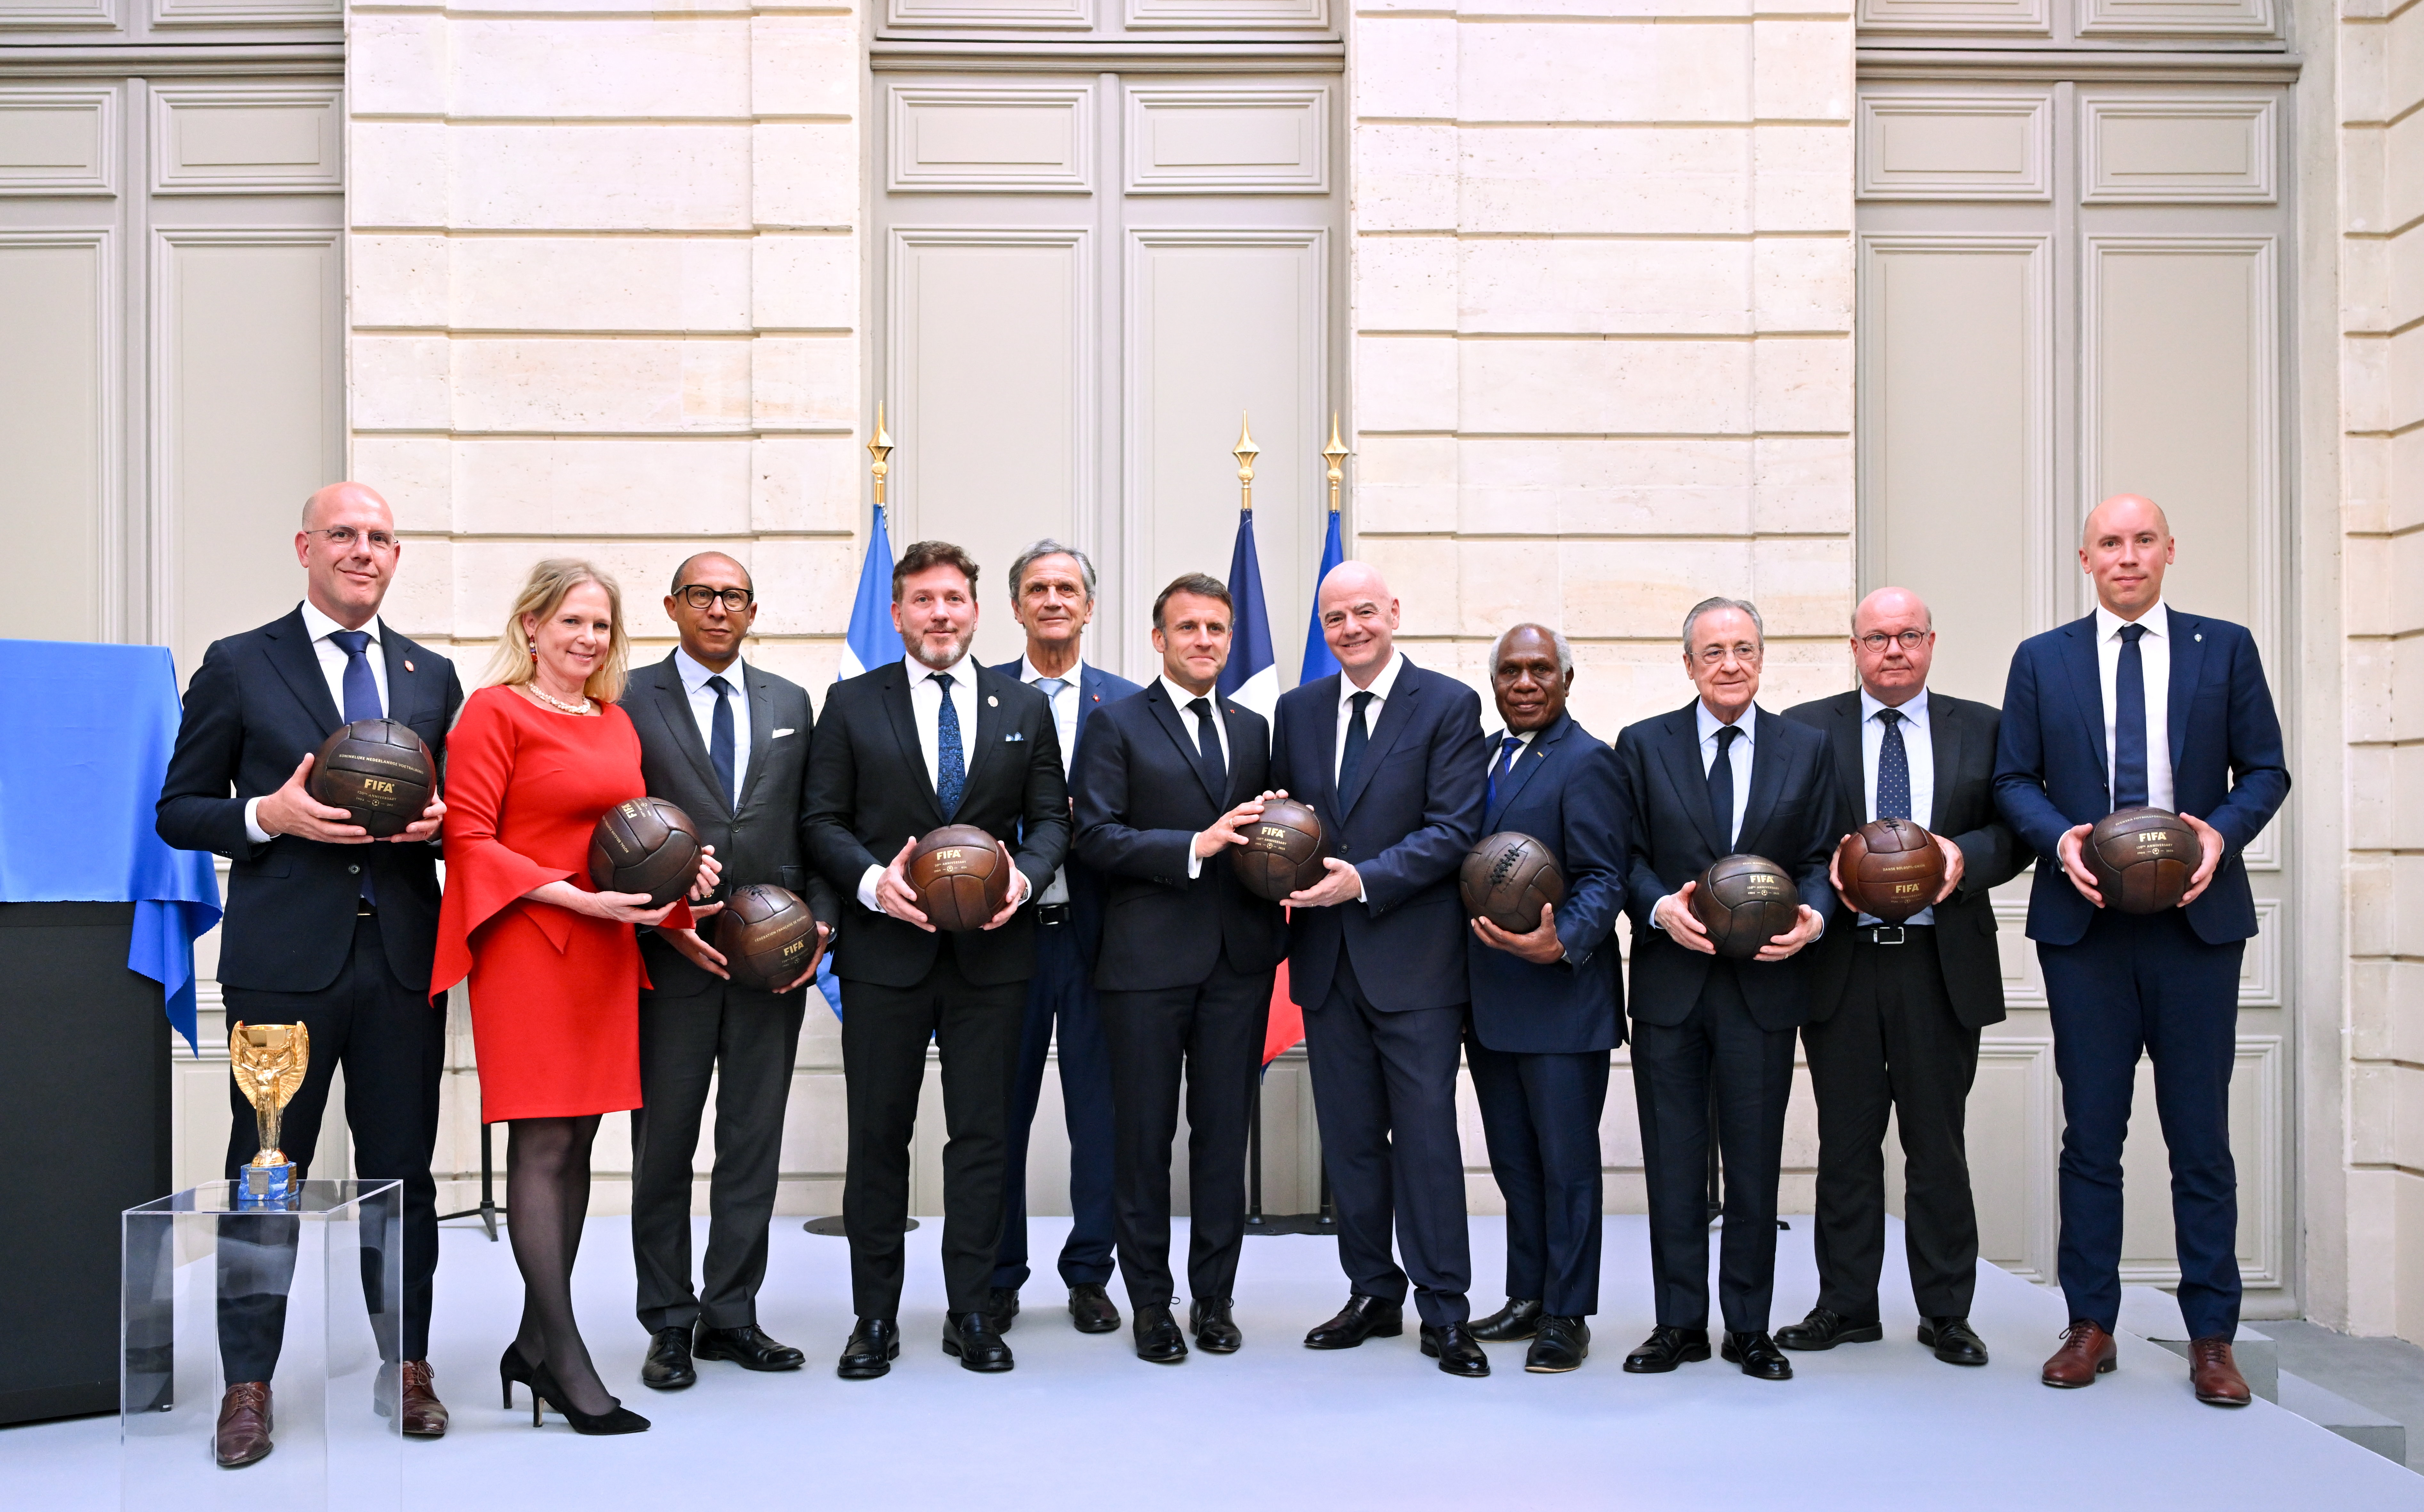 Oprichters en confederaties vieren 120 jaar FIFA